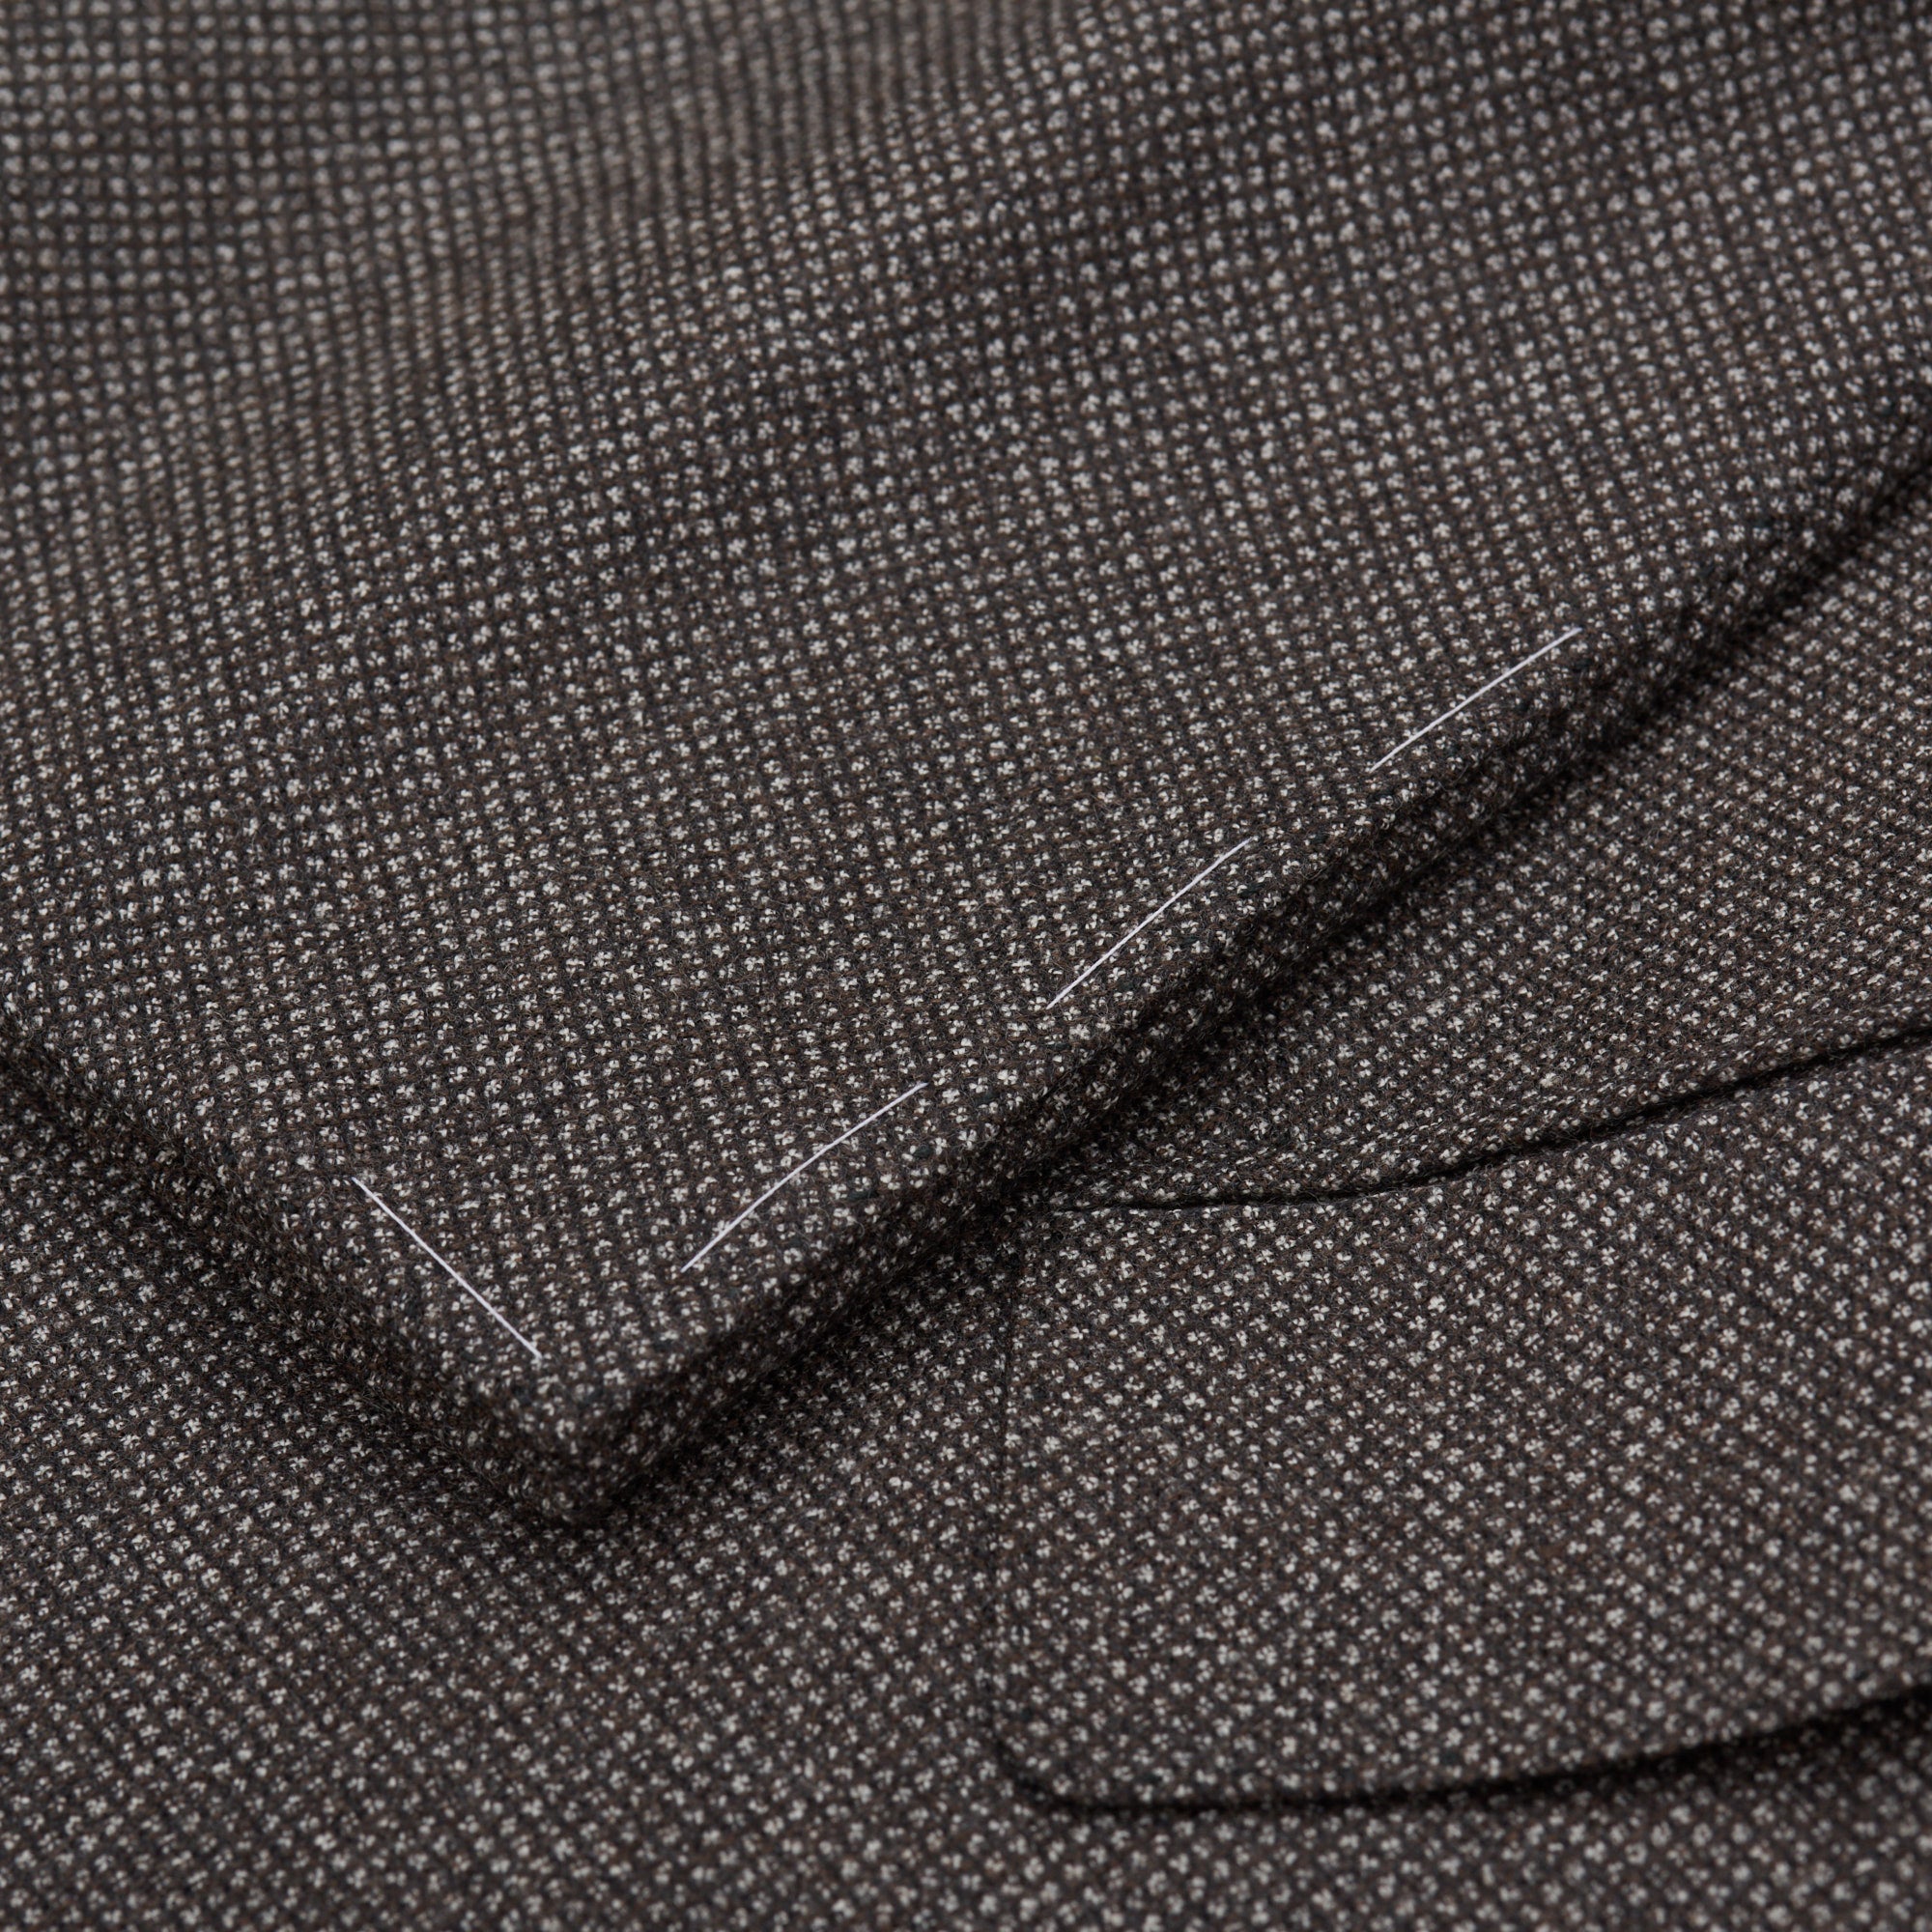 CESARE ATTOLINI Napoli Handmade Gray Birdseye Wool Suit EU 50 NEW US 40 CESARE ATTOLINI